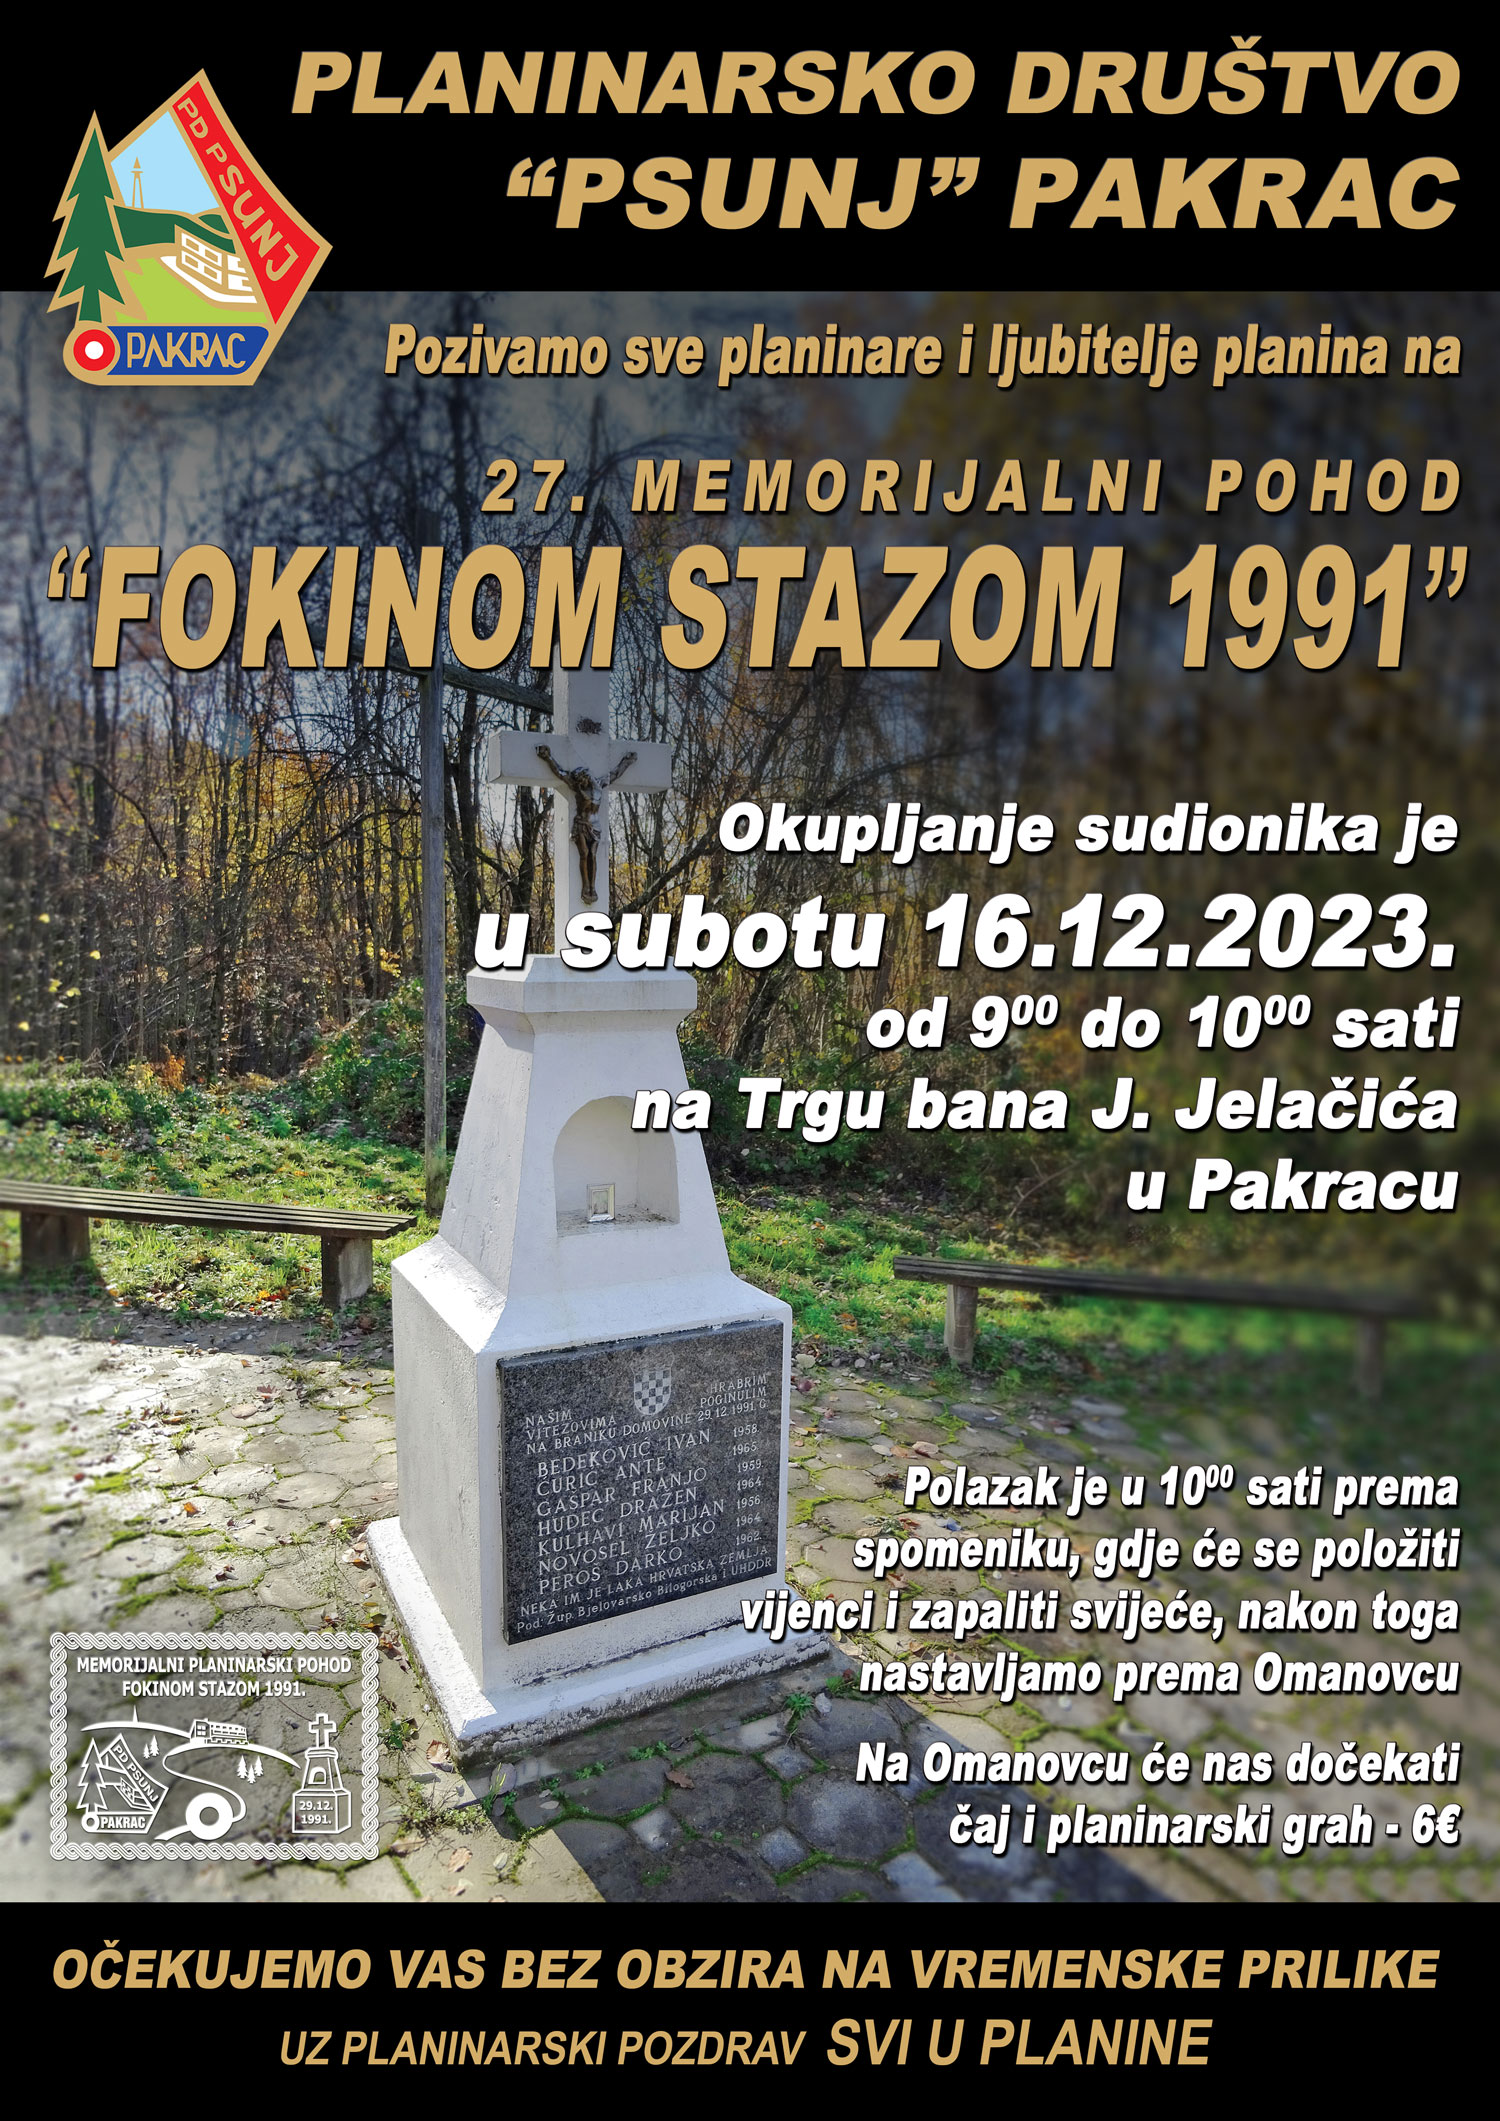 PD PSUNJ U subotu 27. planinarski pohod Fokinom stazom 1991.